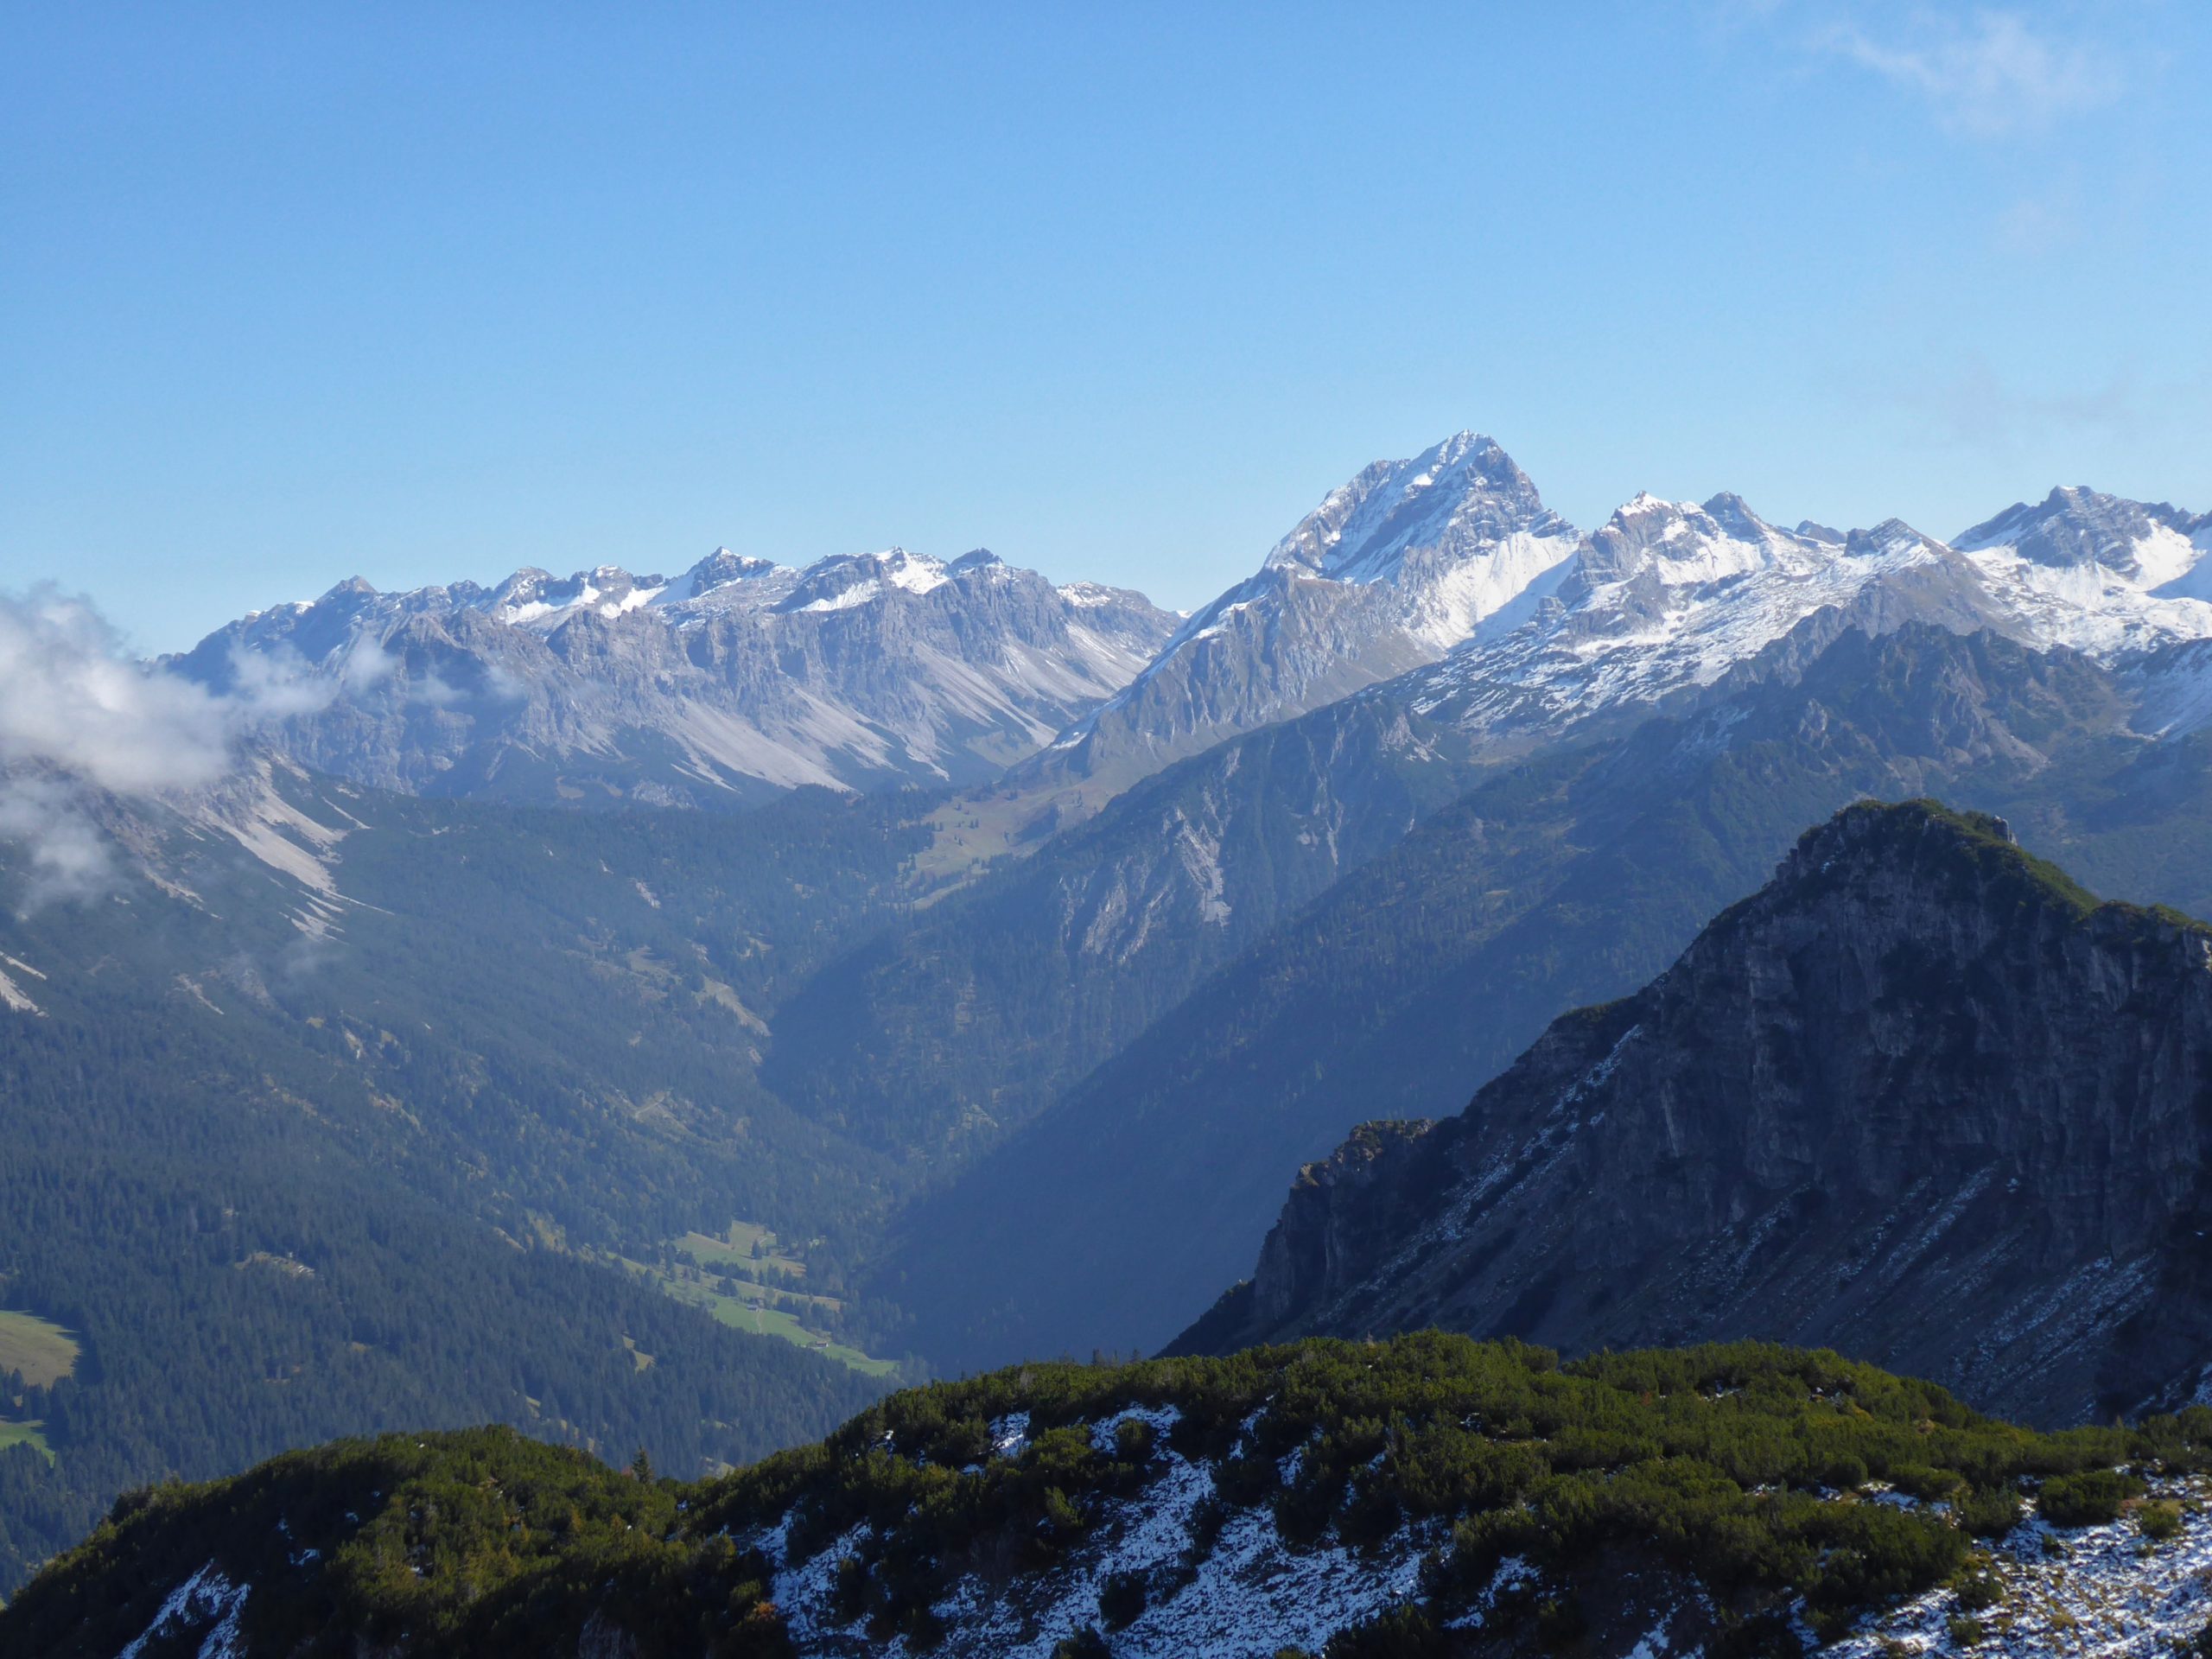 Die Rote Wand beherrscht die Bergszenerie im Lechquellengebirge – der unscheinbare Misthaufen nebenan (Bildmitte) sticht allein durch seinen Gipfelnamen hervor.